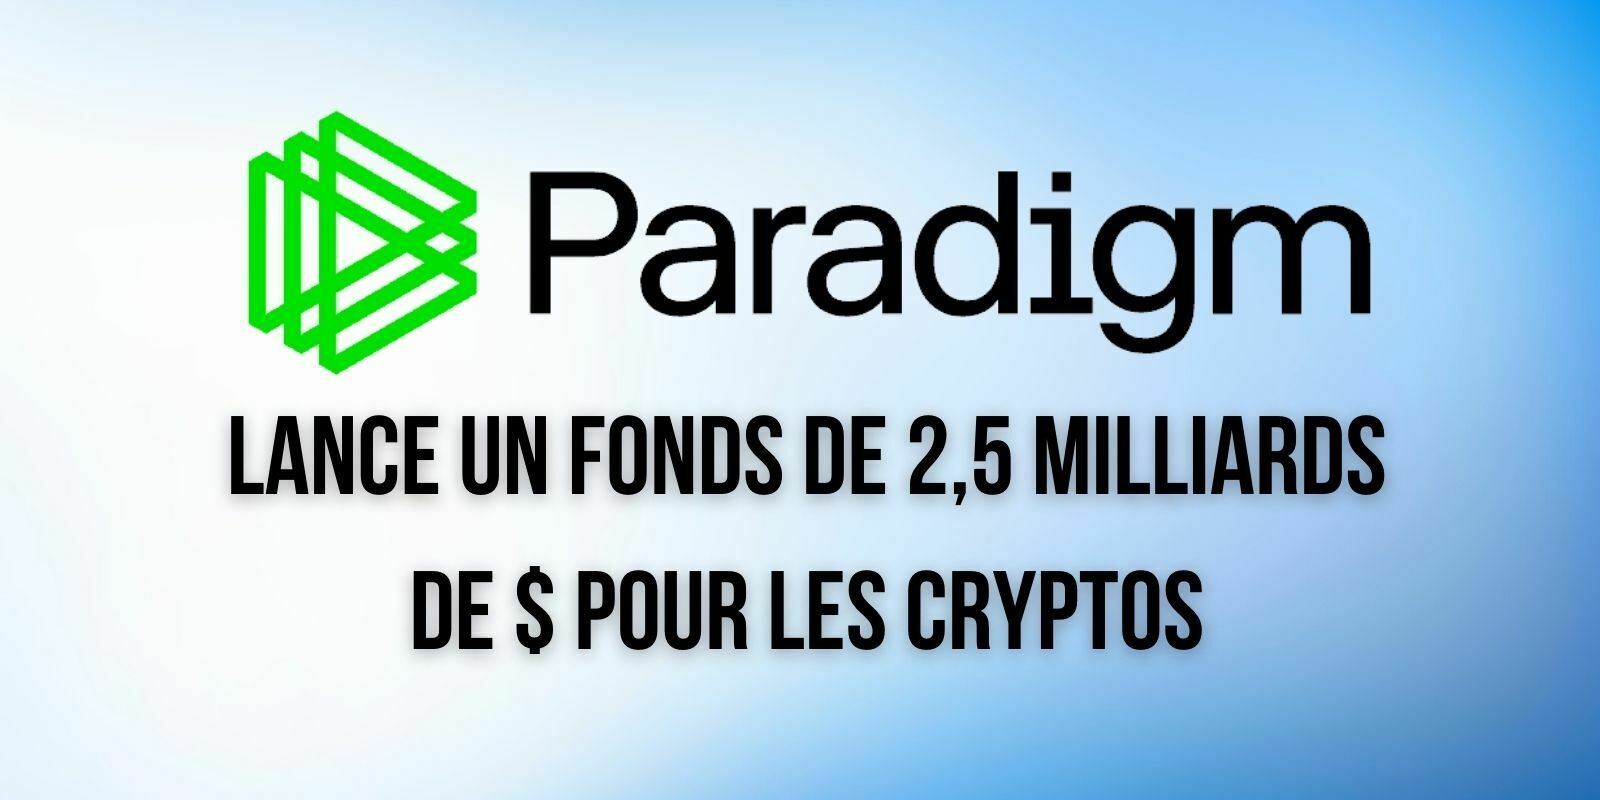 Paradigm lance un fonds d'investissement de 2,5 milliards de dollars pour le secteur crypto